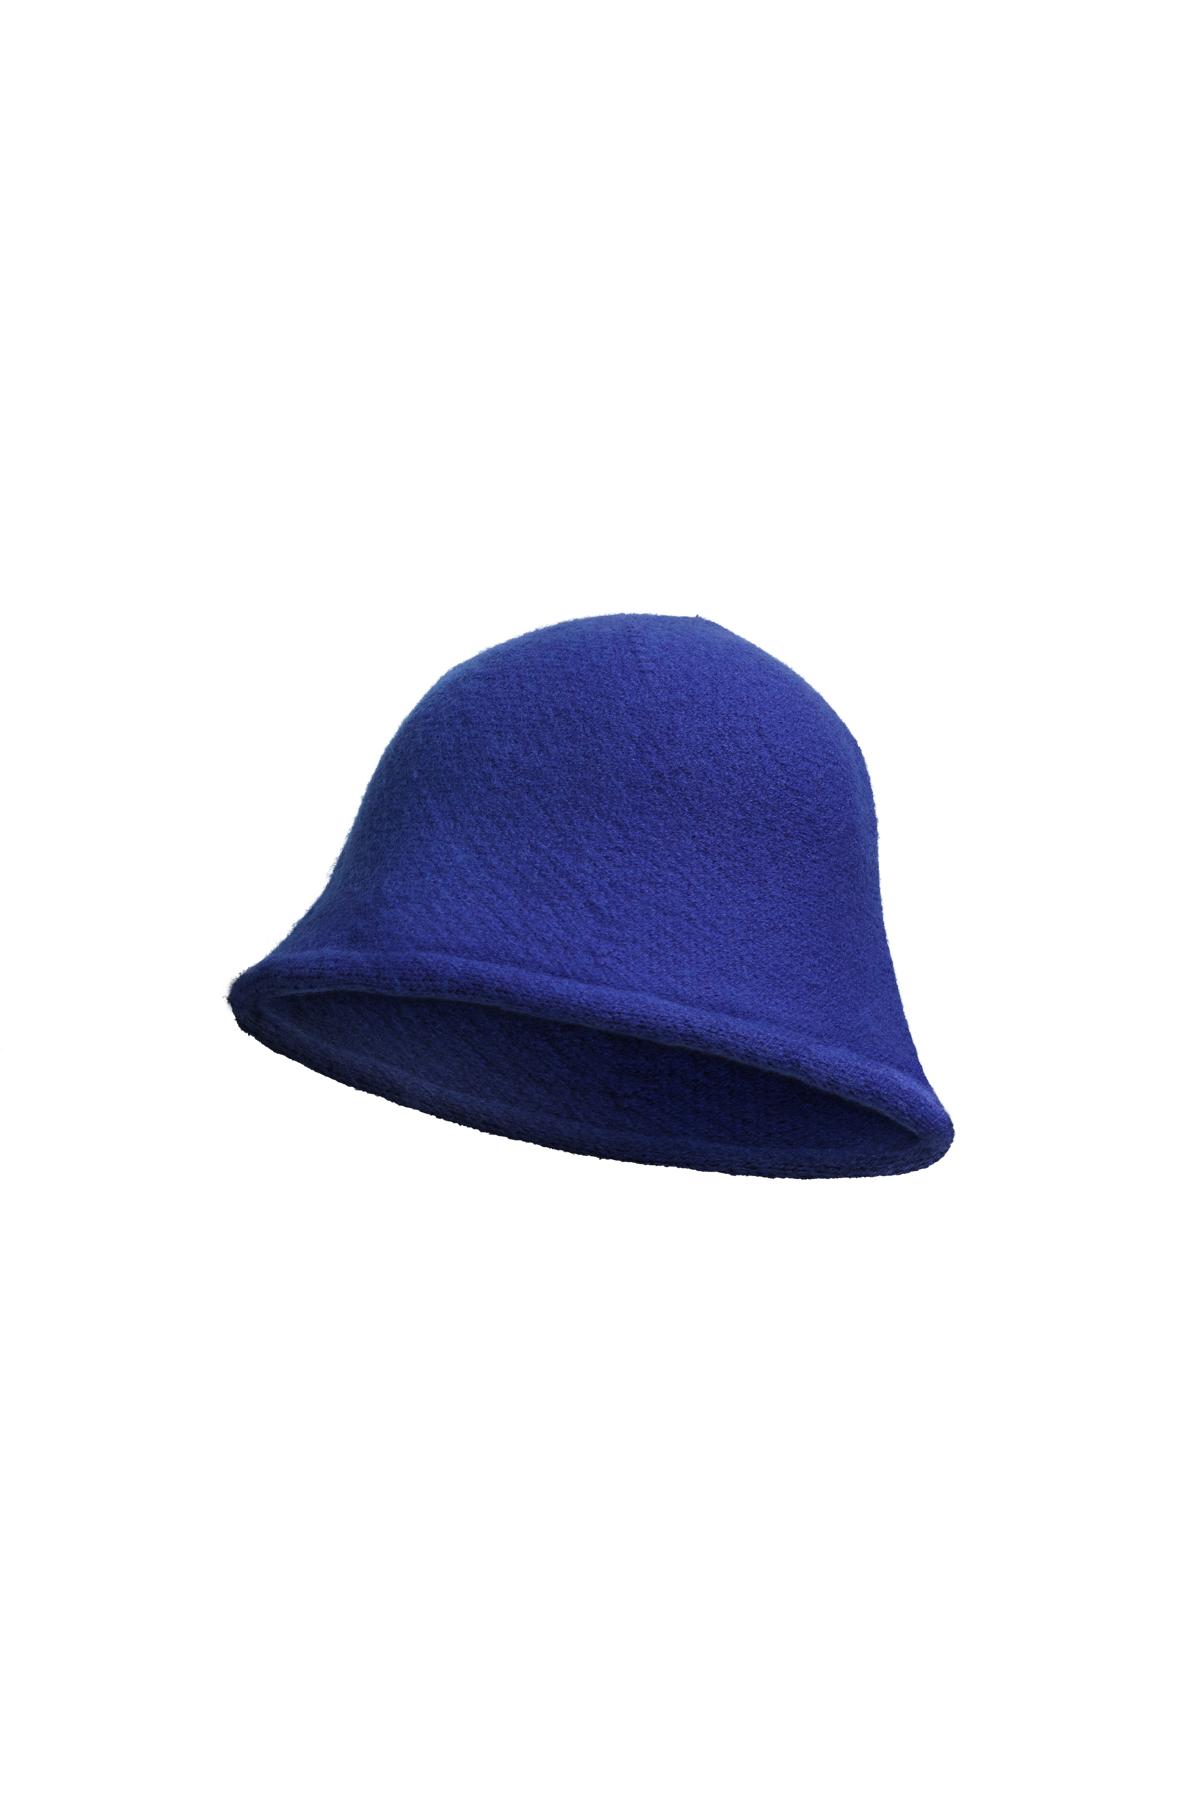 Bucket hat solid color Blue Acrylic 